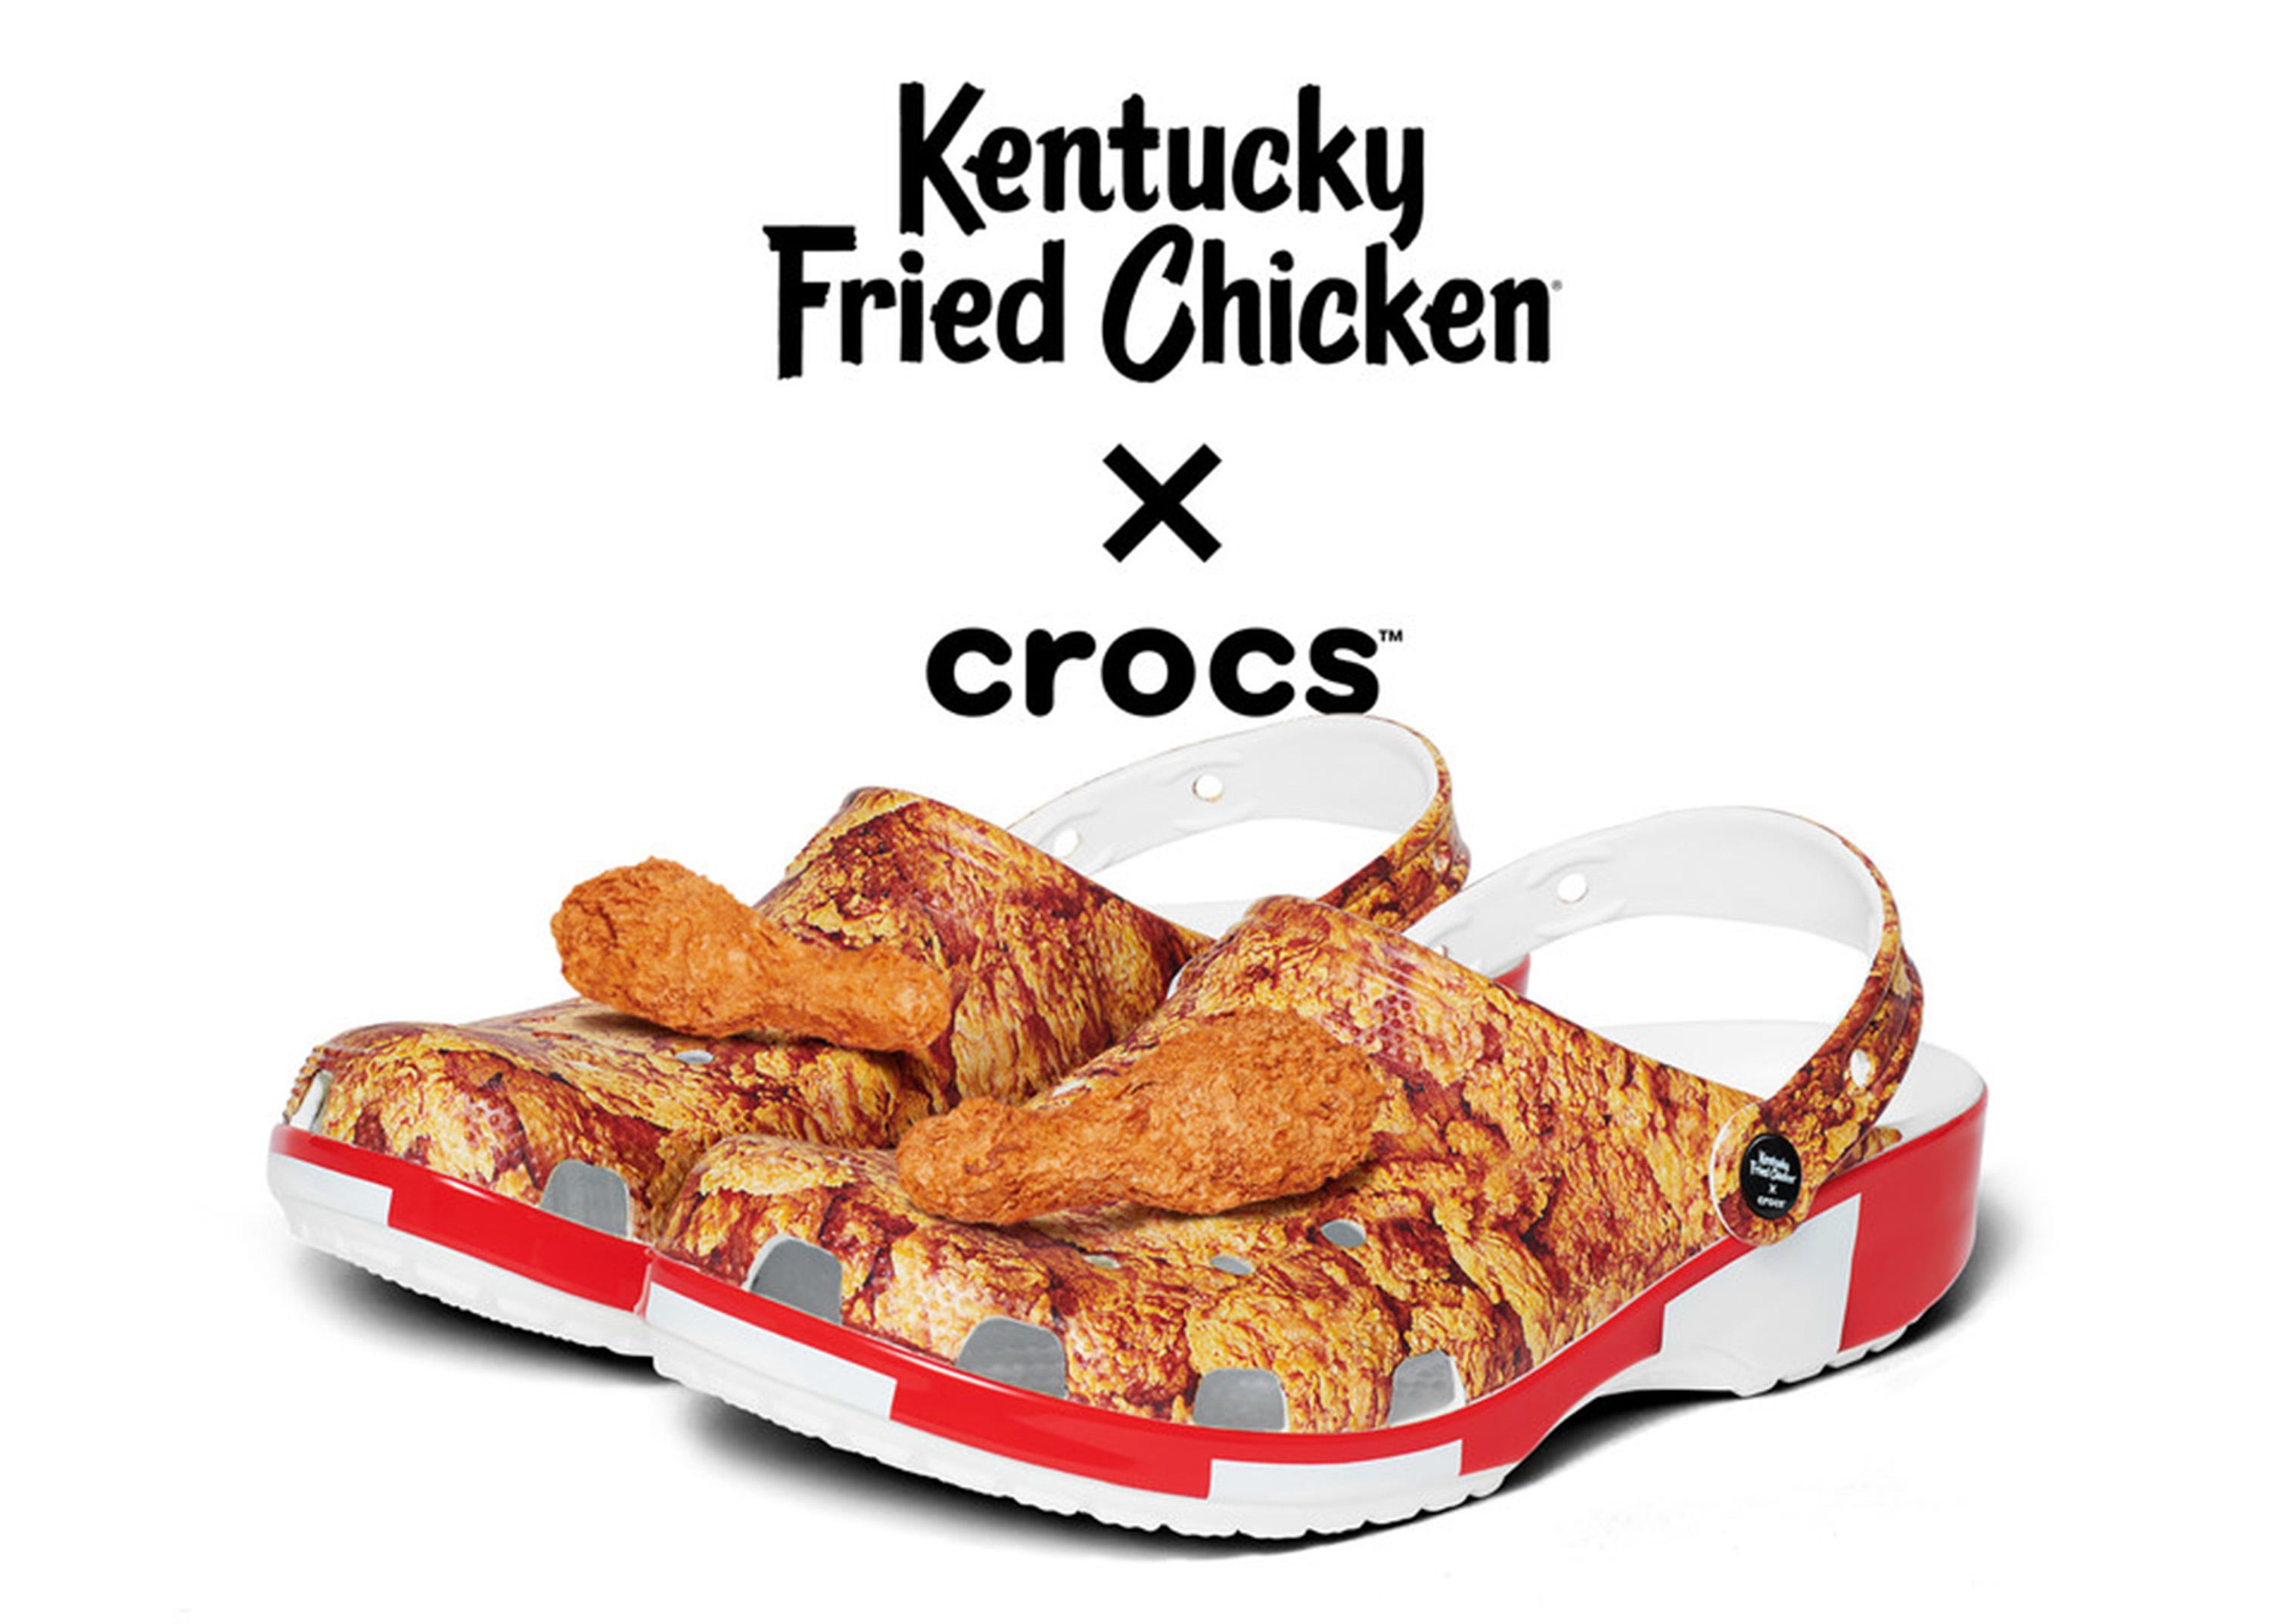 Crocs' new KFC shoe lets people 'wear a bucket of chicken'